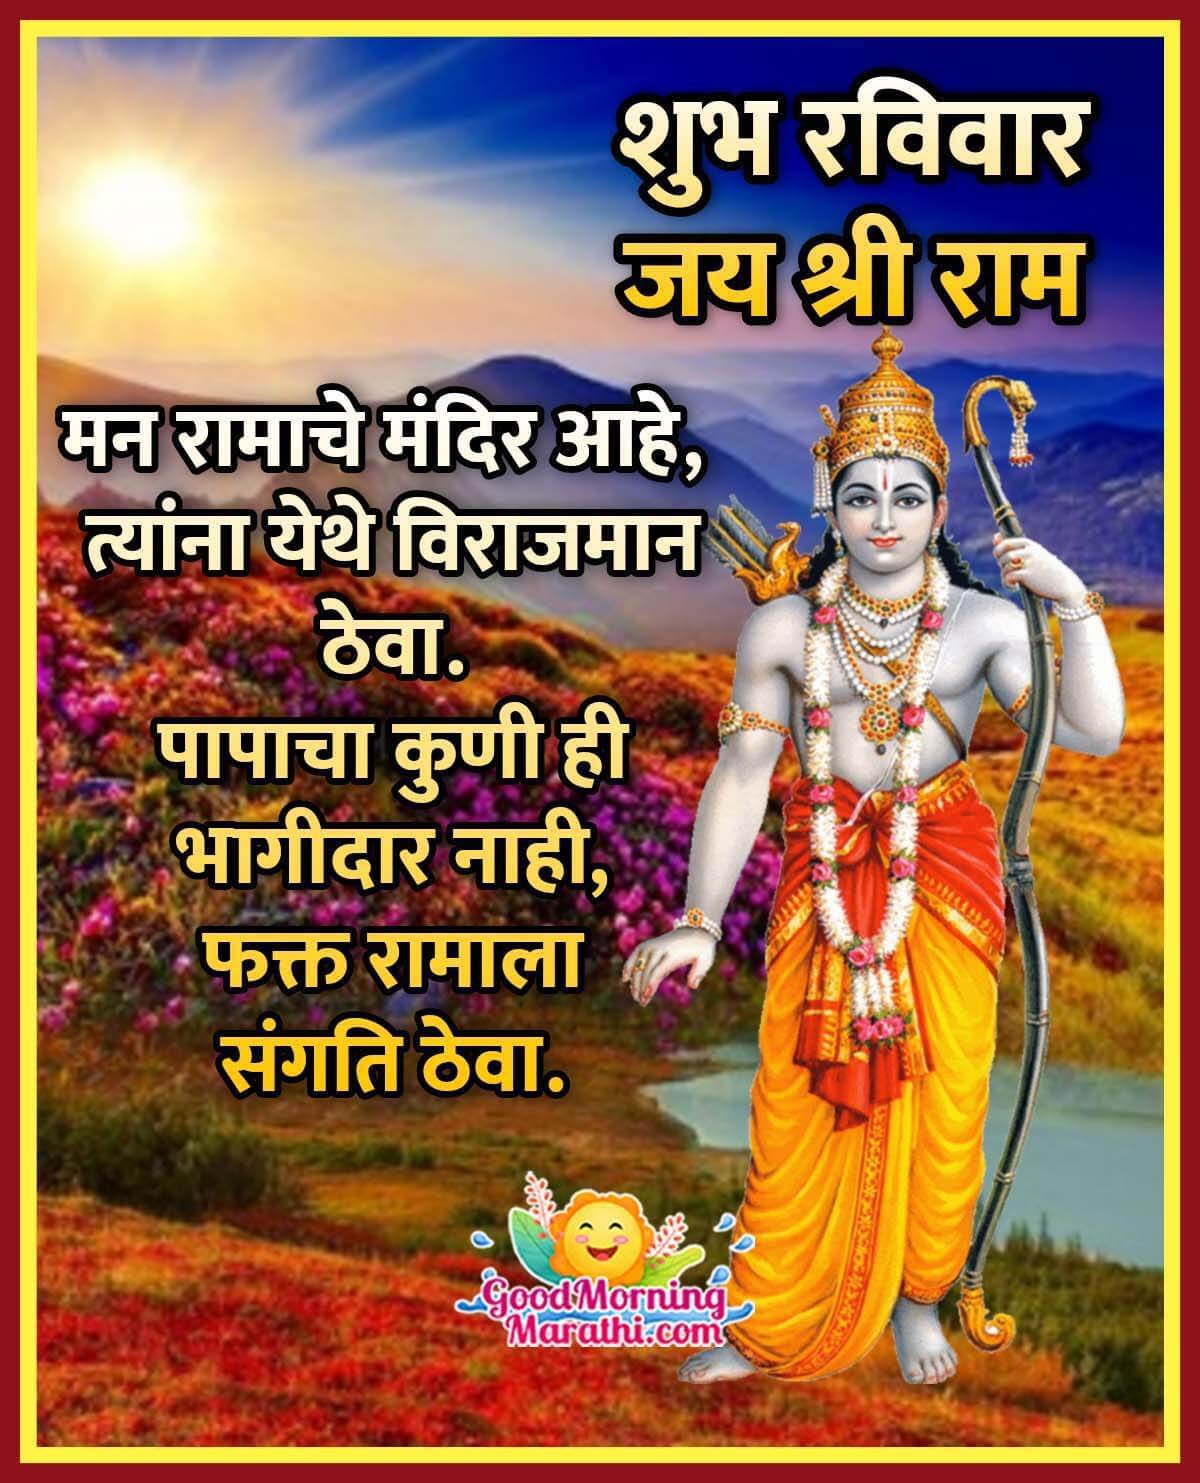 Shri Ram Sunday Images In Marathi - Good Morning Wishes & Images ...